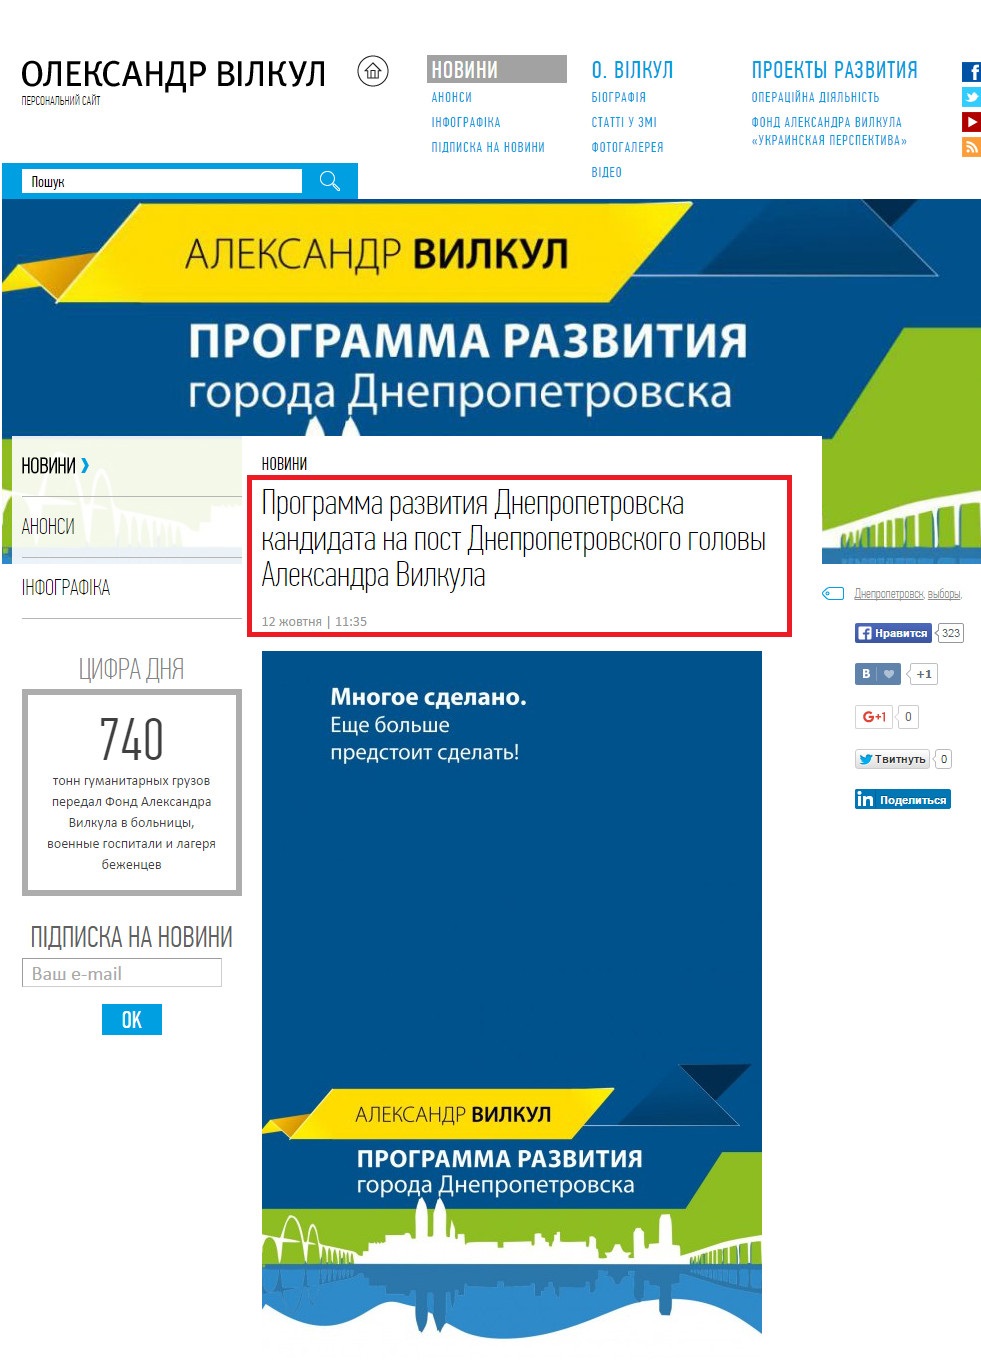 http://www.vilkul.ua/news/programma-razvitiya-dnepropetrovska-kandidata-na-post